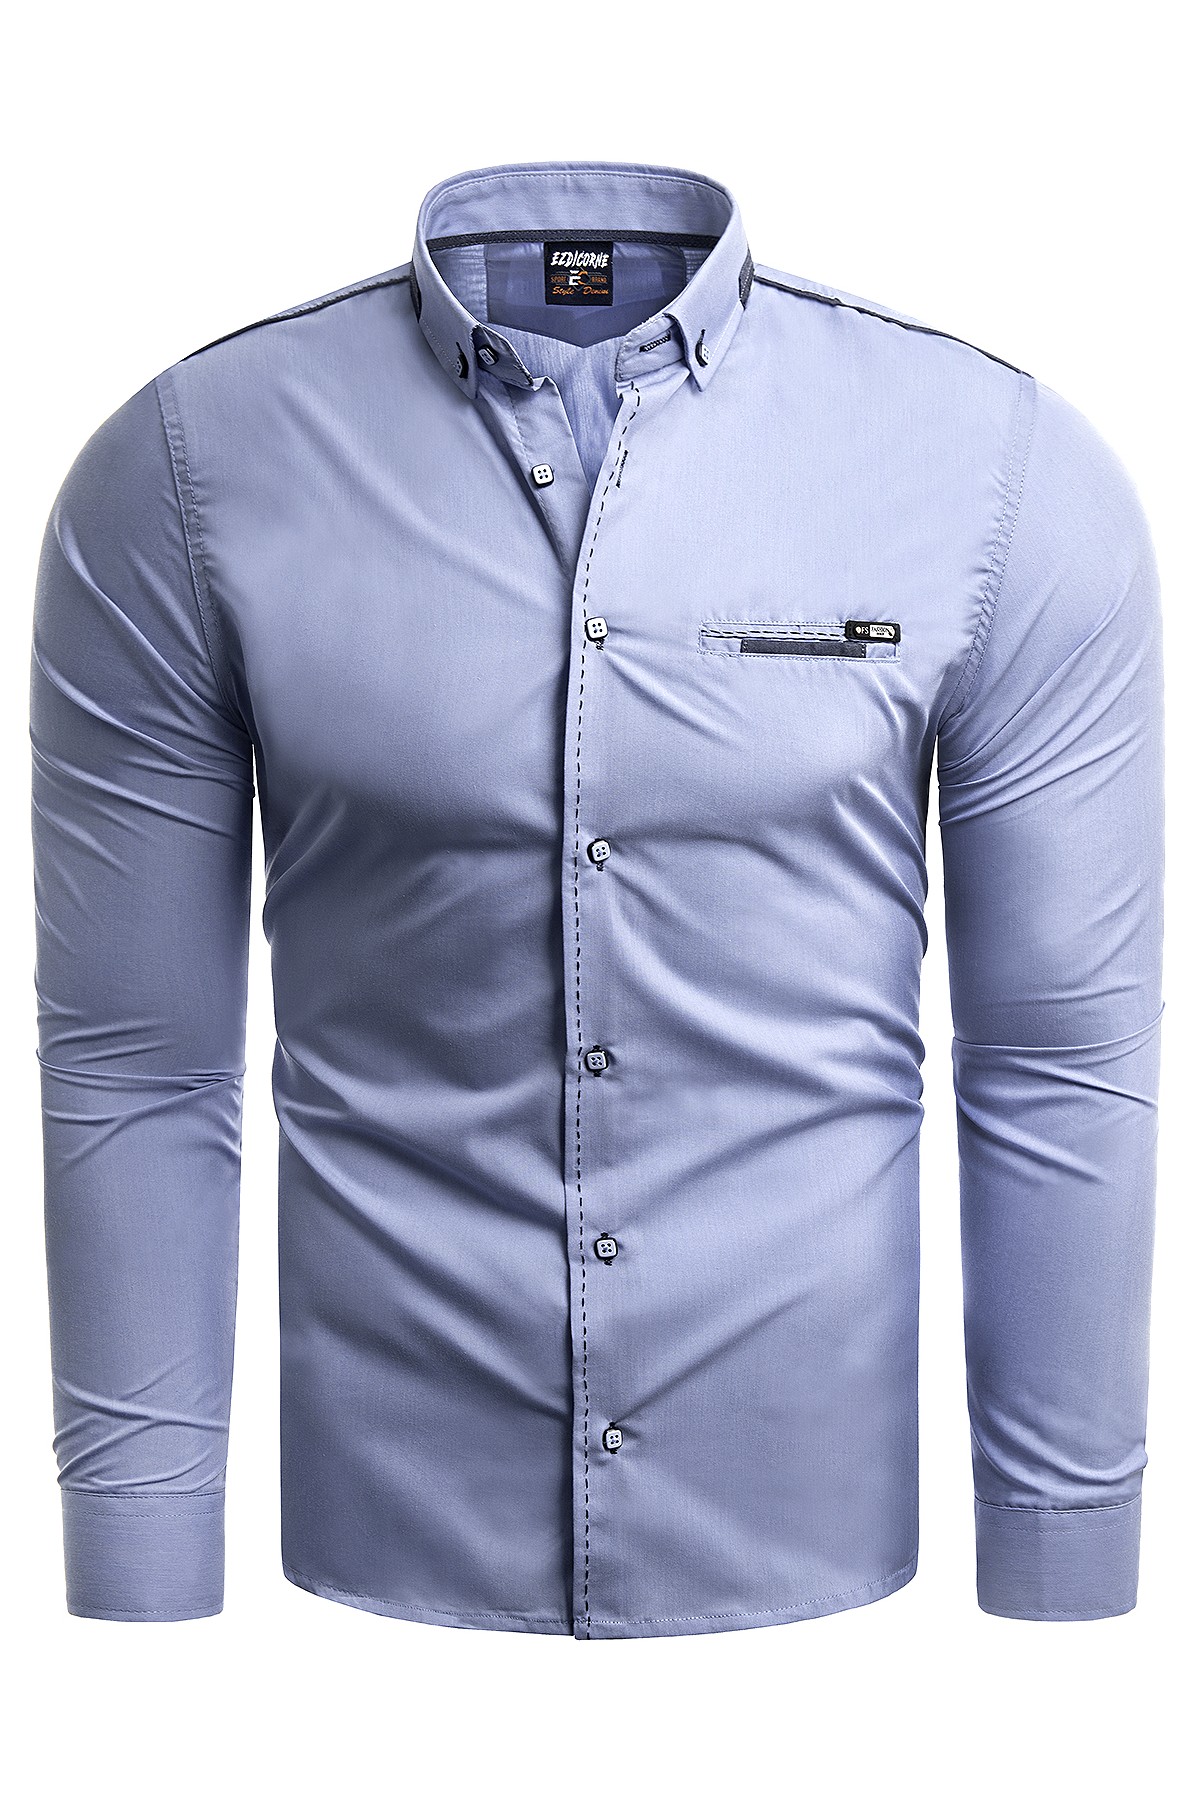 Koszula męska (RL39) - Błękitna